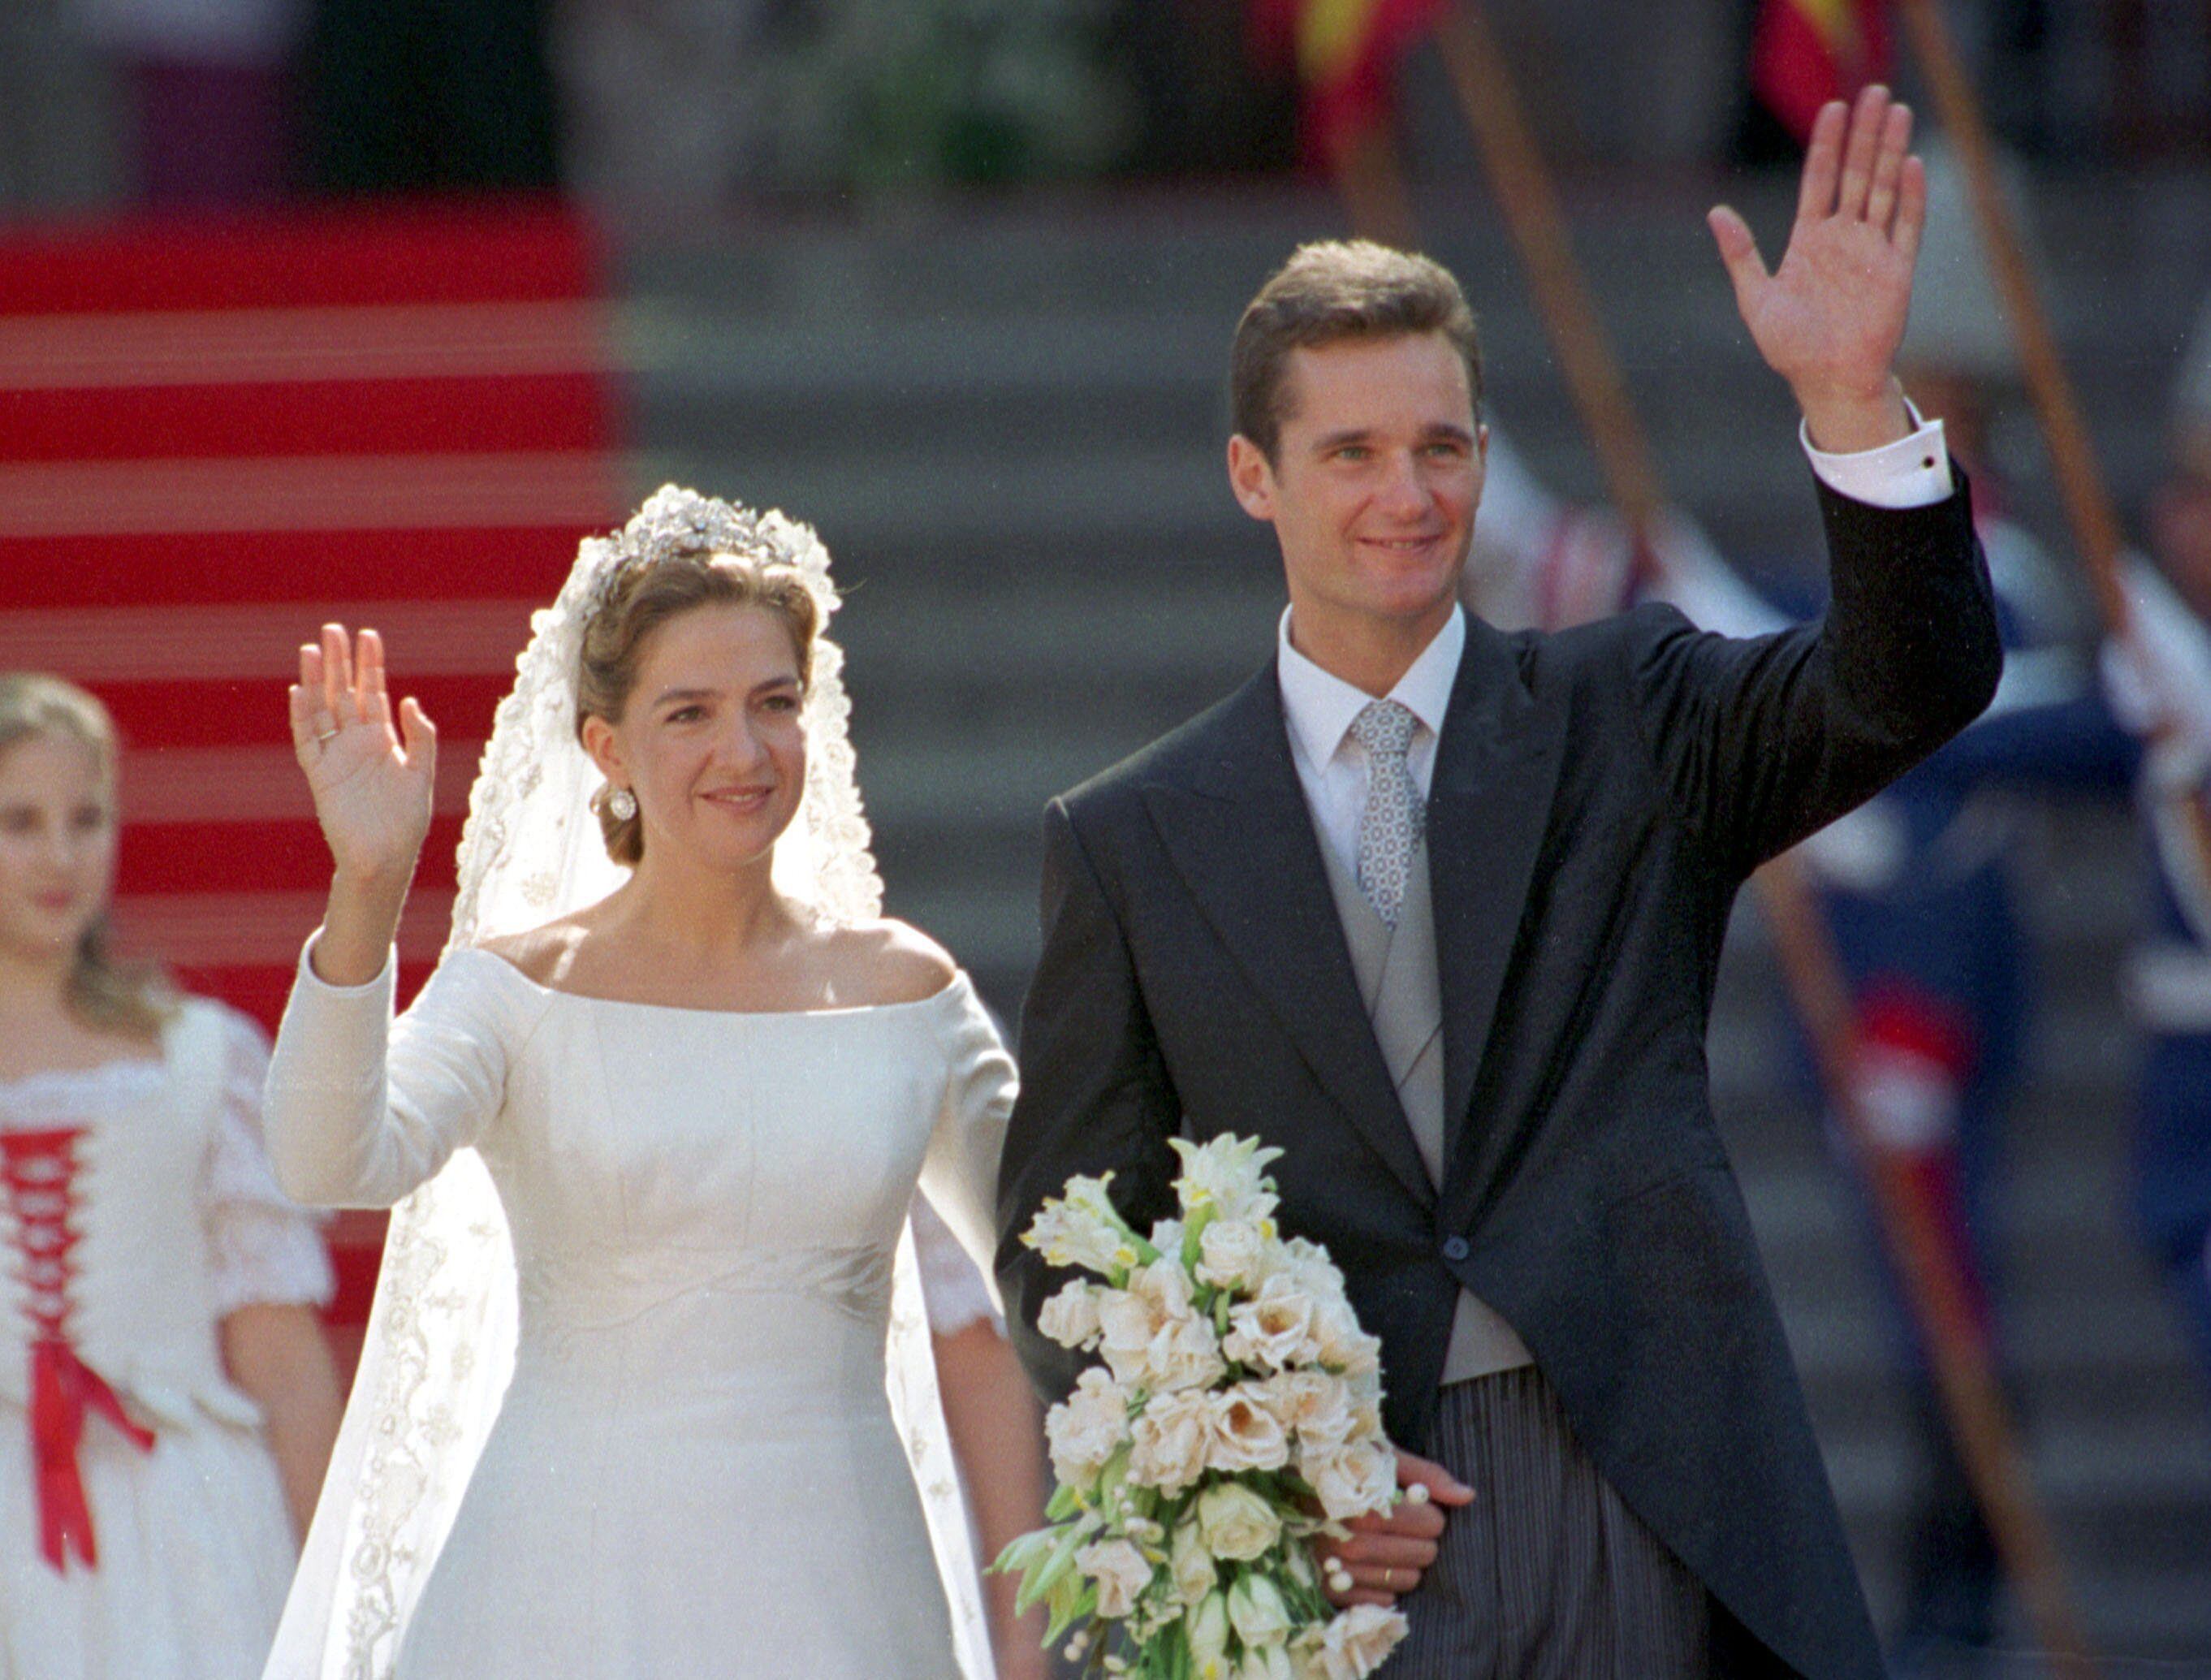 La infanta Cristina e Iñaki Urdangarin el día de su boda, el 4 de octubre de 1997 en Barcelona.